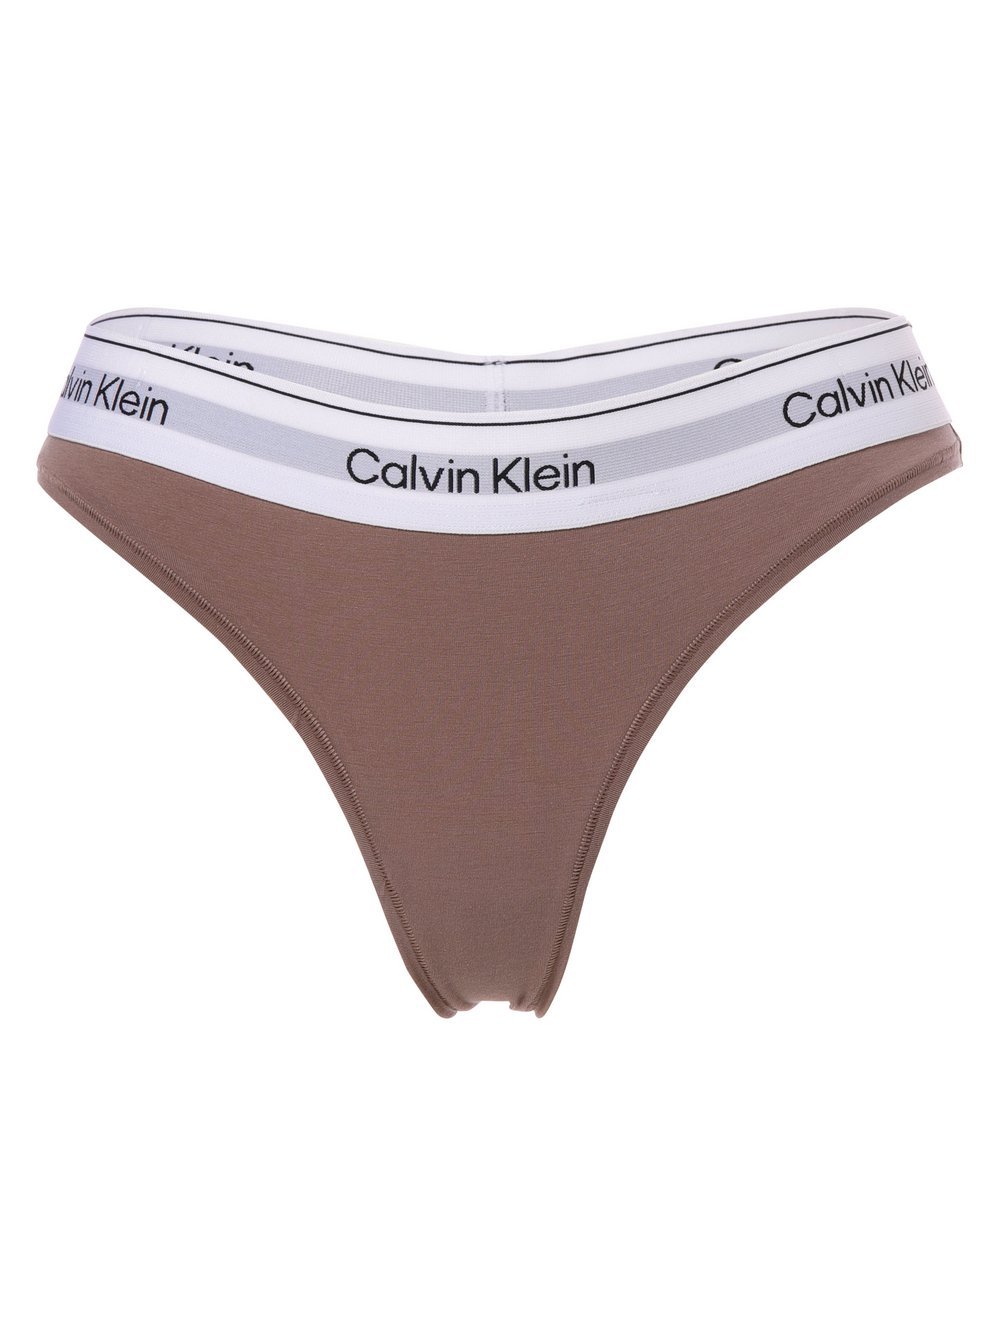 Calvin Klein - Stringi damskie, beżowy|brązowy